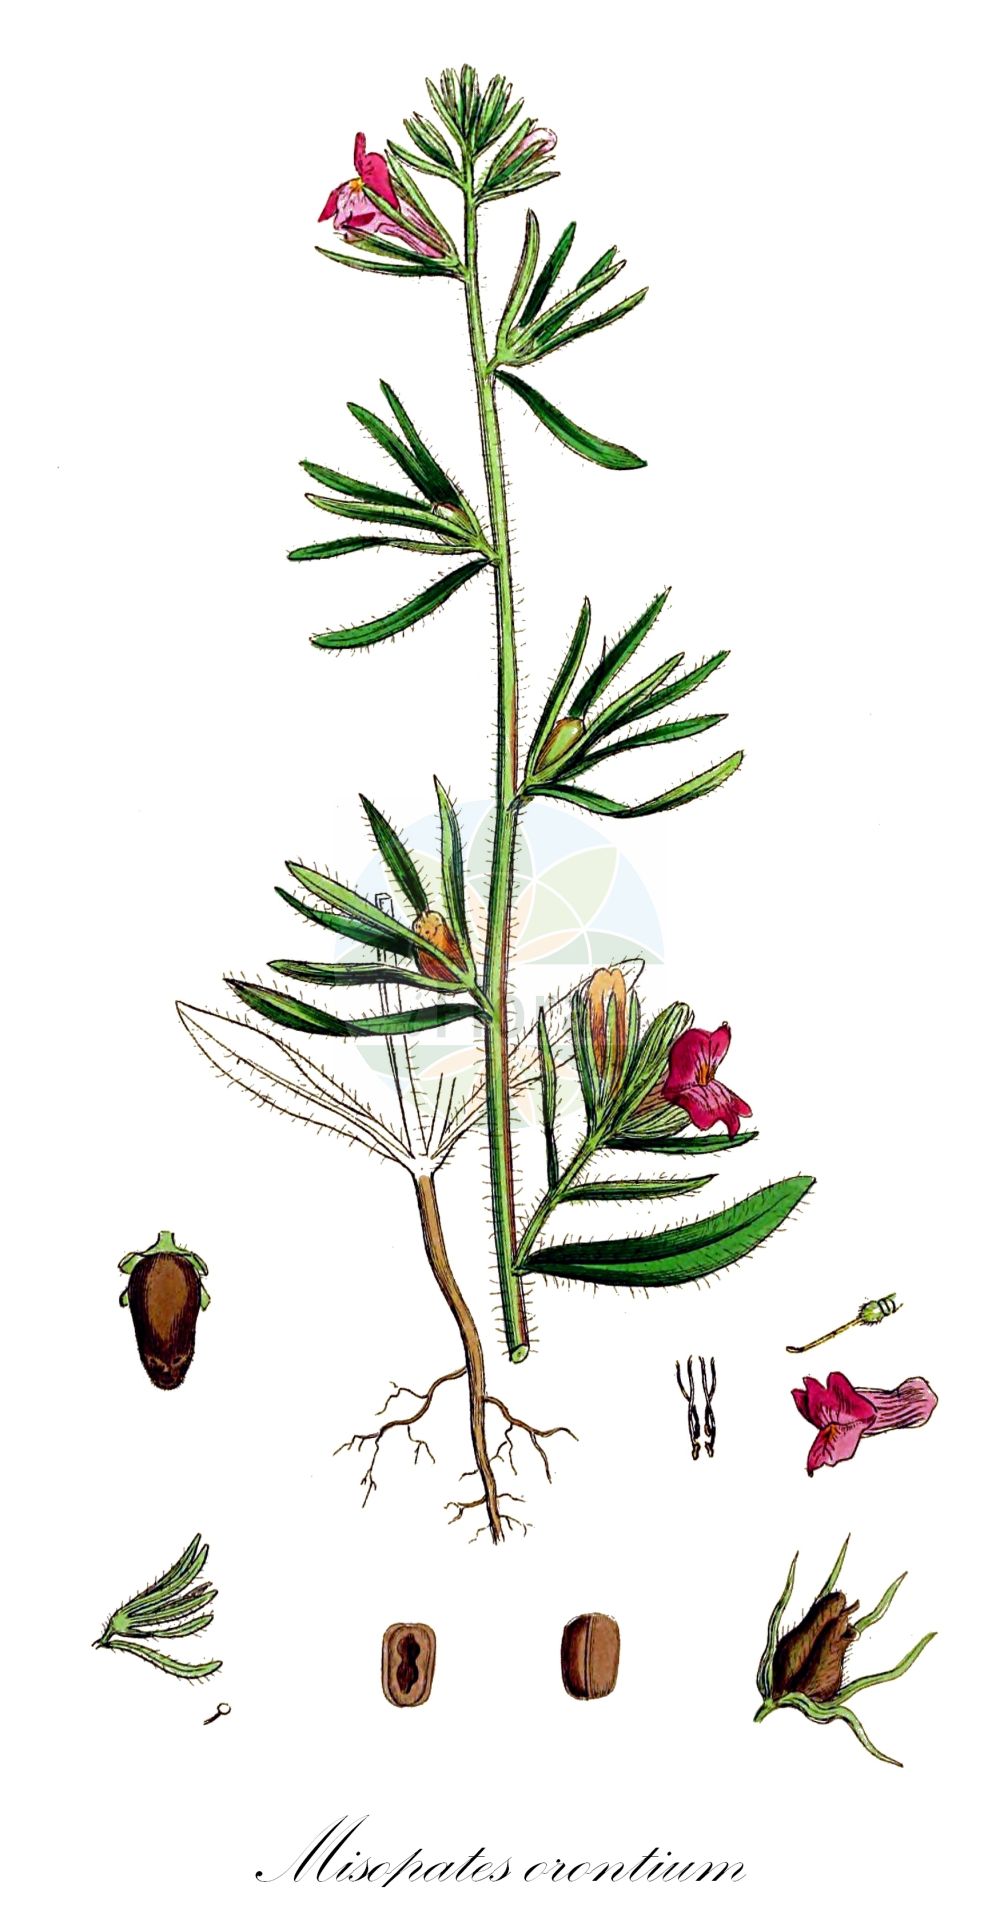 Historische Abbildung von Misopates orontium (Acker-Löwenmaul - Weasel's-snout). Das Bild zeigt Blatt, Bluete, Frucht und Same. ---- Historical Drawing of Misopates orontium (Acker-Löwenmaul - Weasel's-snout). The image is showing leaf, flower, fruit and seed.(Misopates orontium,Acker-Löwenmaul,Weasel's-snout,Antirrhinum orontium,Misopates orontium,Acker-Loewenmaul,Katzenmaul,Weasel's-snout,Calf's-snout,Linearleaf Snapdragon,Corn Snapdragon,Lesser Snapdragon,Linear-leaved Snapdragon,Wild Antirrhinum,Misopates,Katzenmaul,Snapdragon,Plantaginaceae,Wegerichgewächse,Plantain family,Blatt,Bluete,Frucht,Same,leaf,flower,fruit,seed,Sowerby (1790-1813))